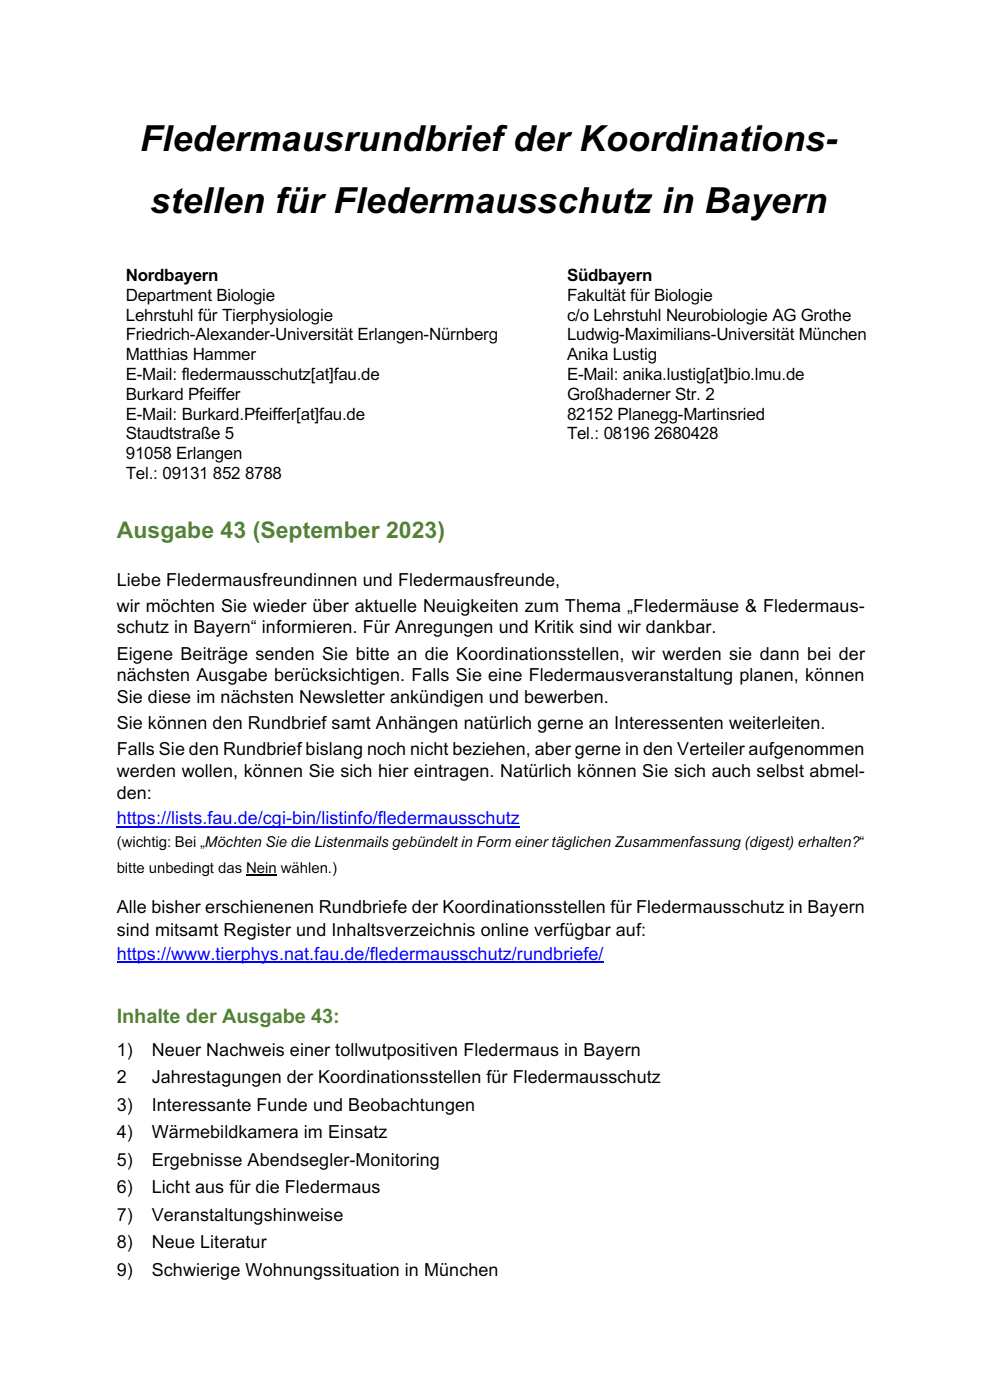 Rundbrief Nr. 43 der Koordinationsstellen für Fledermausschutz in Bayern